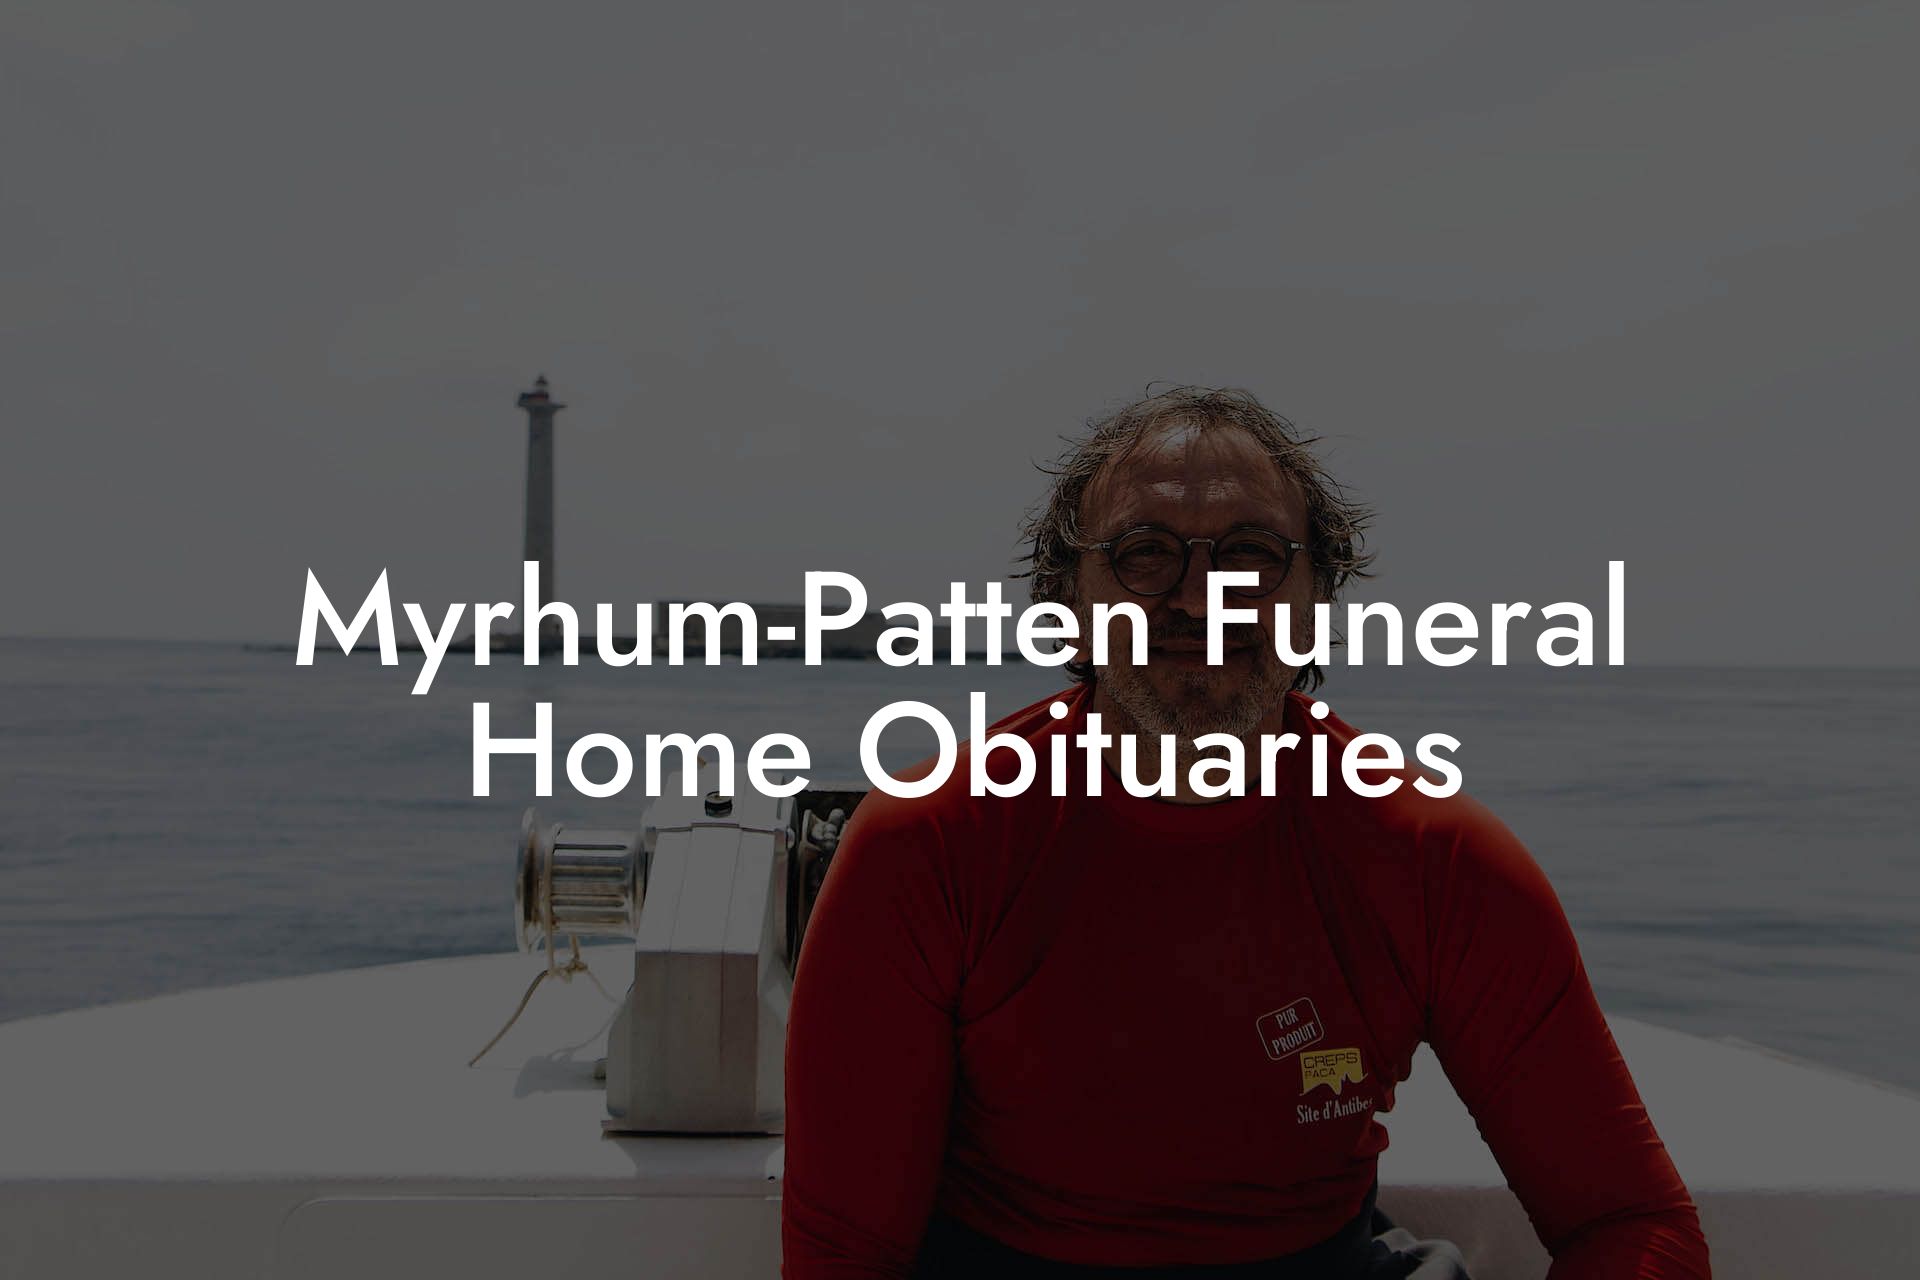 Myrhum-Patten Funeral Home Obituaries